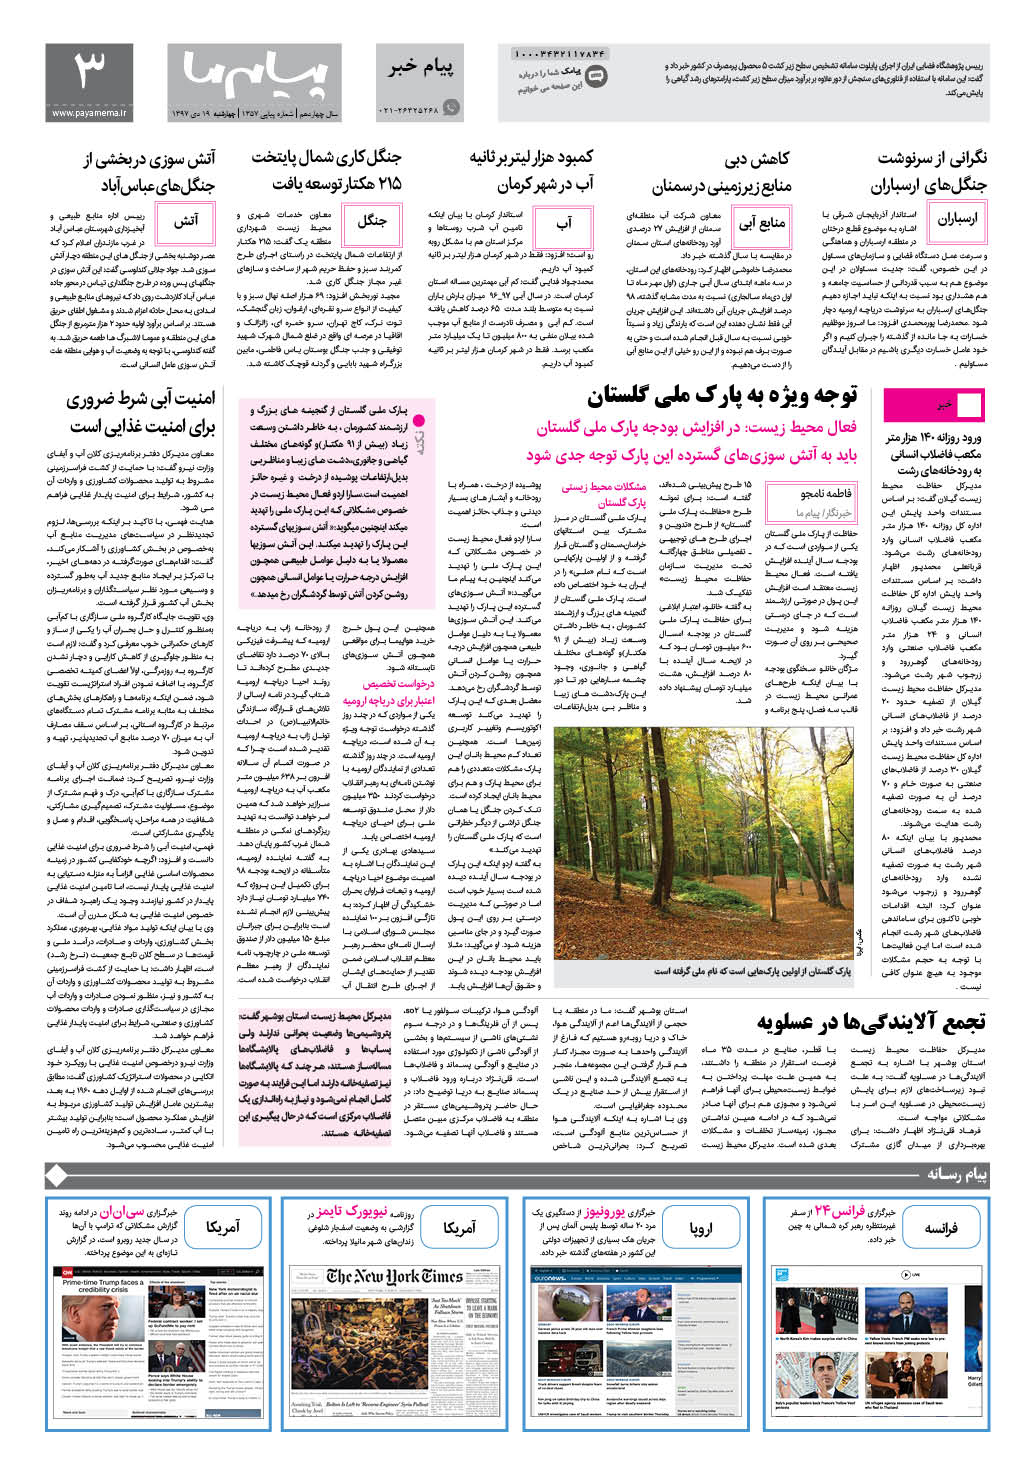 صفحه پیام خبر شماره 1357 روزنامه پیام ما